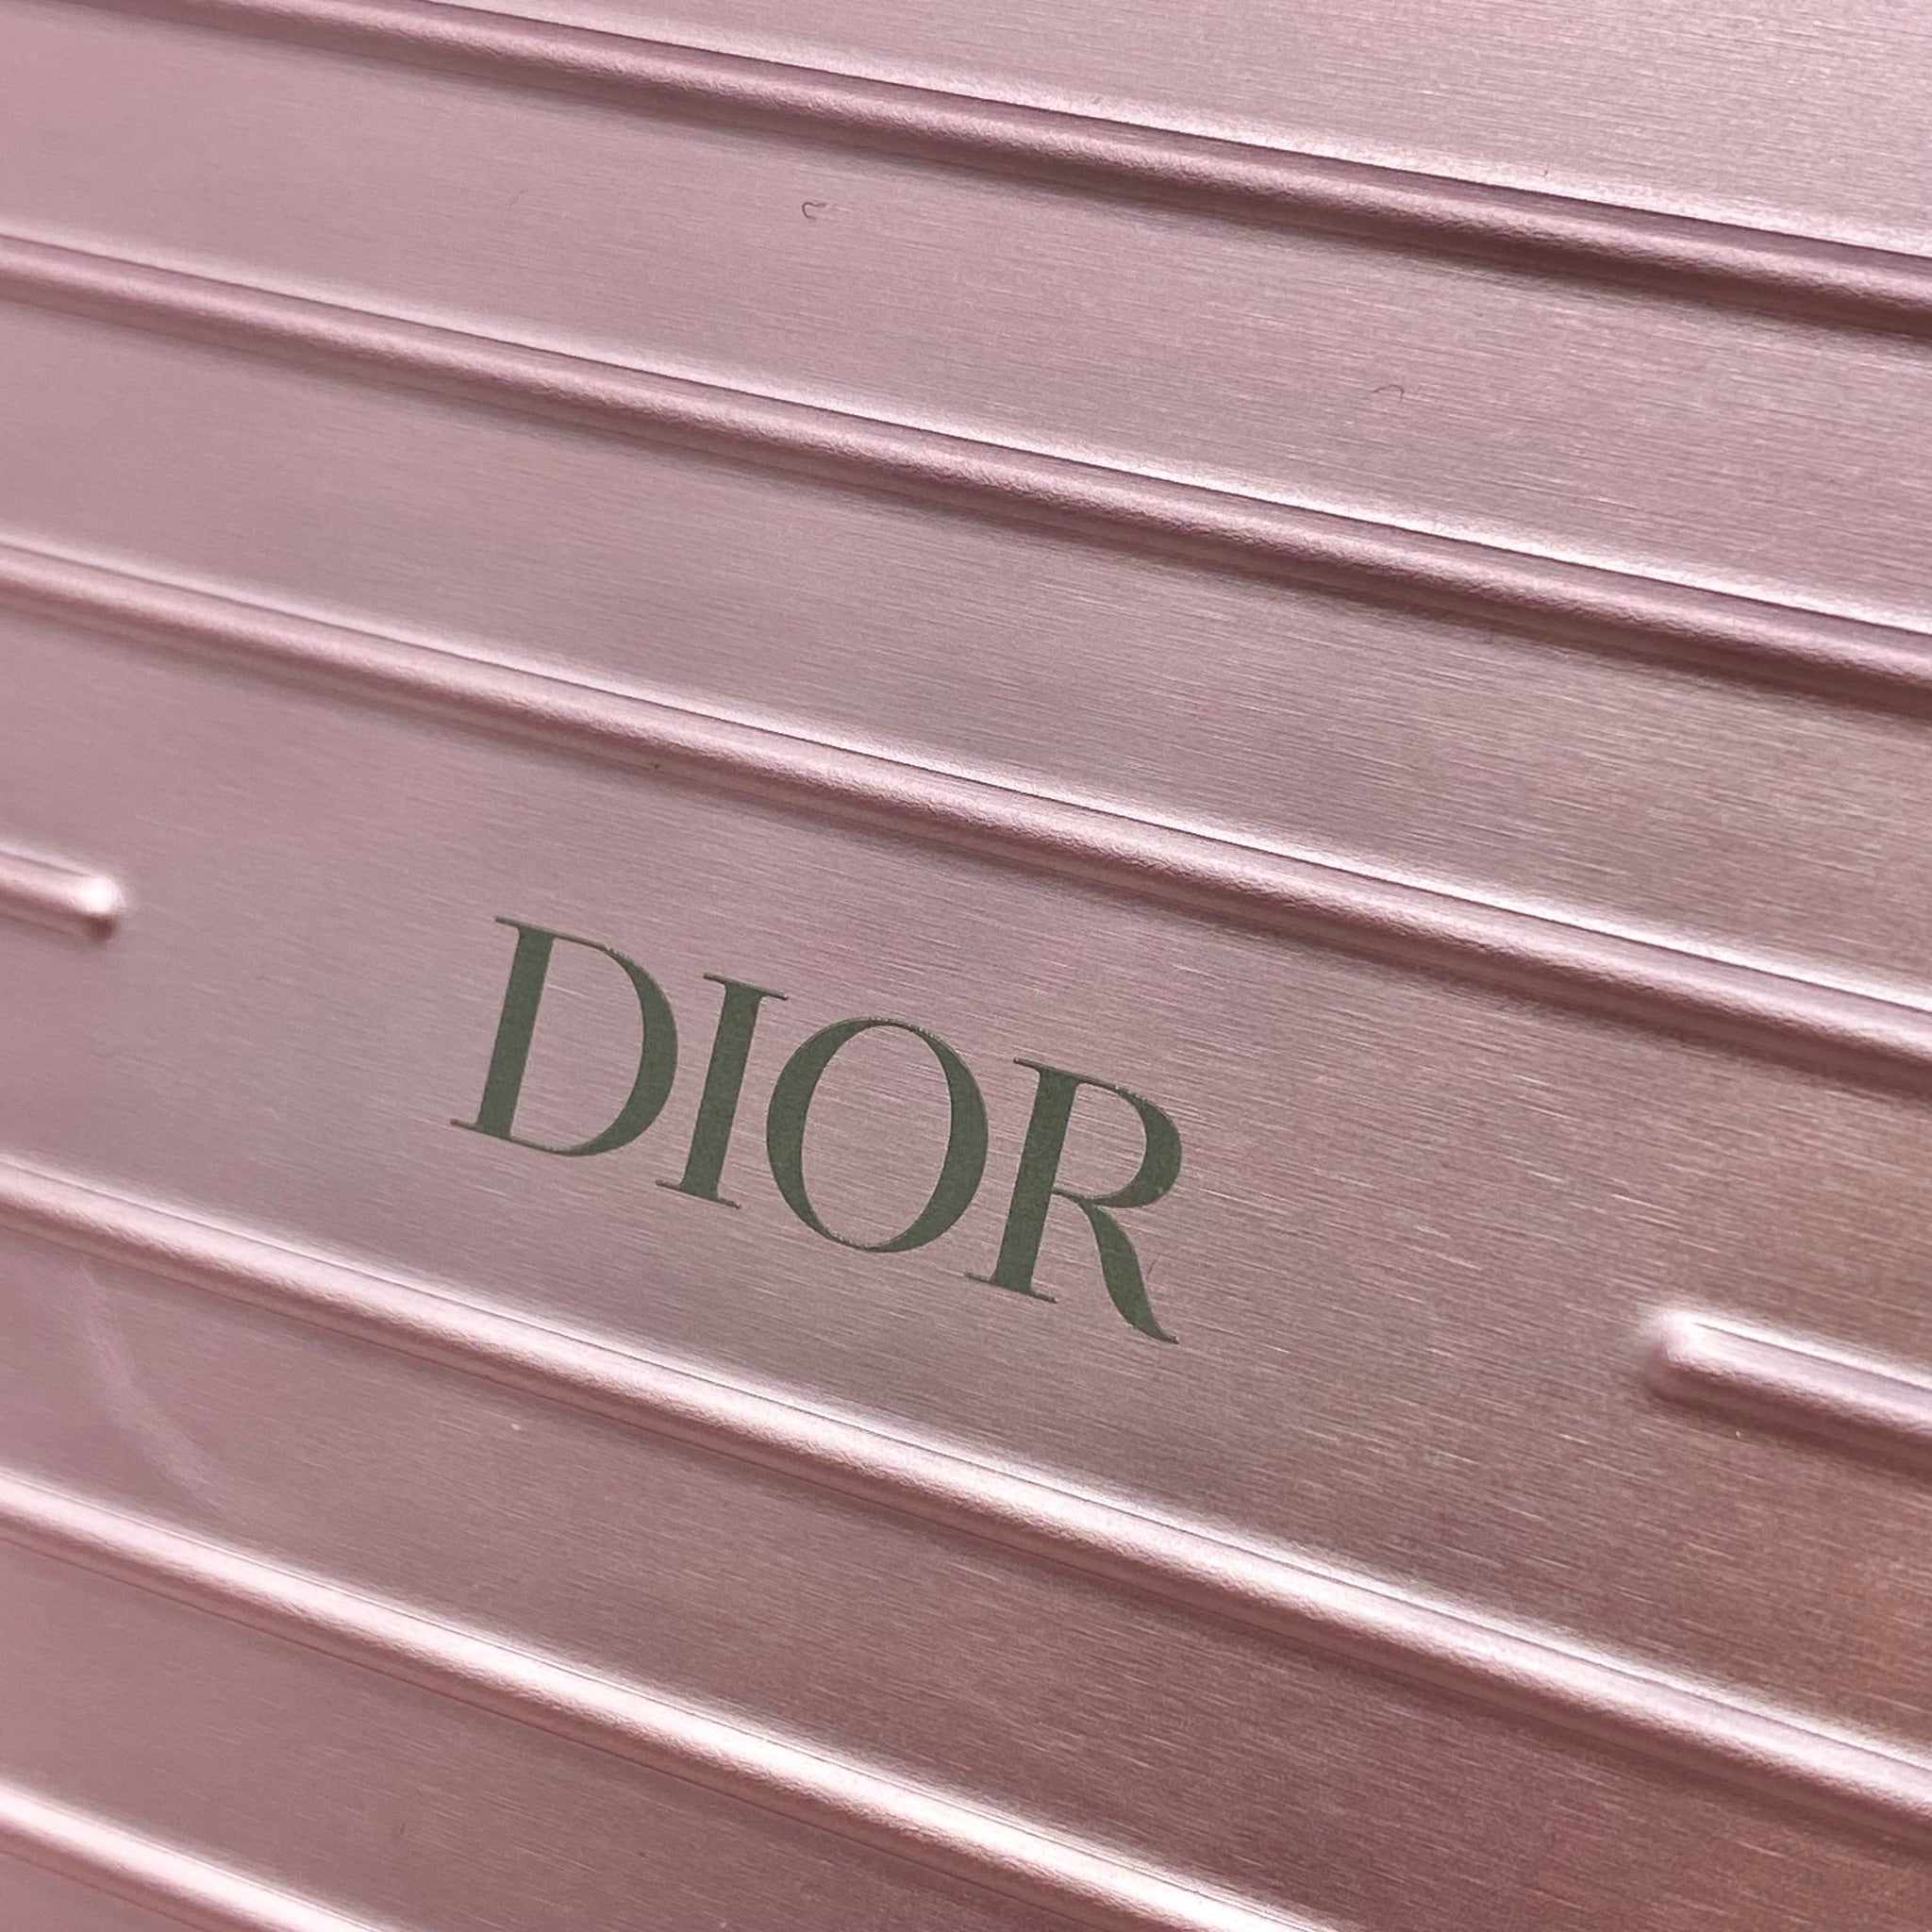 Dior x Rimowa Rose Aluminum Personal Clutch